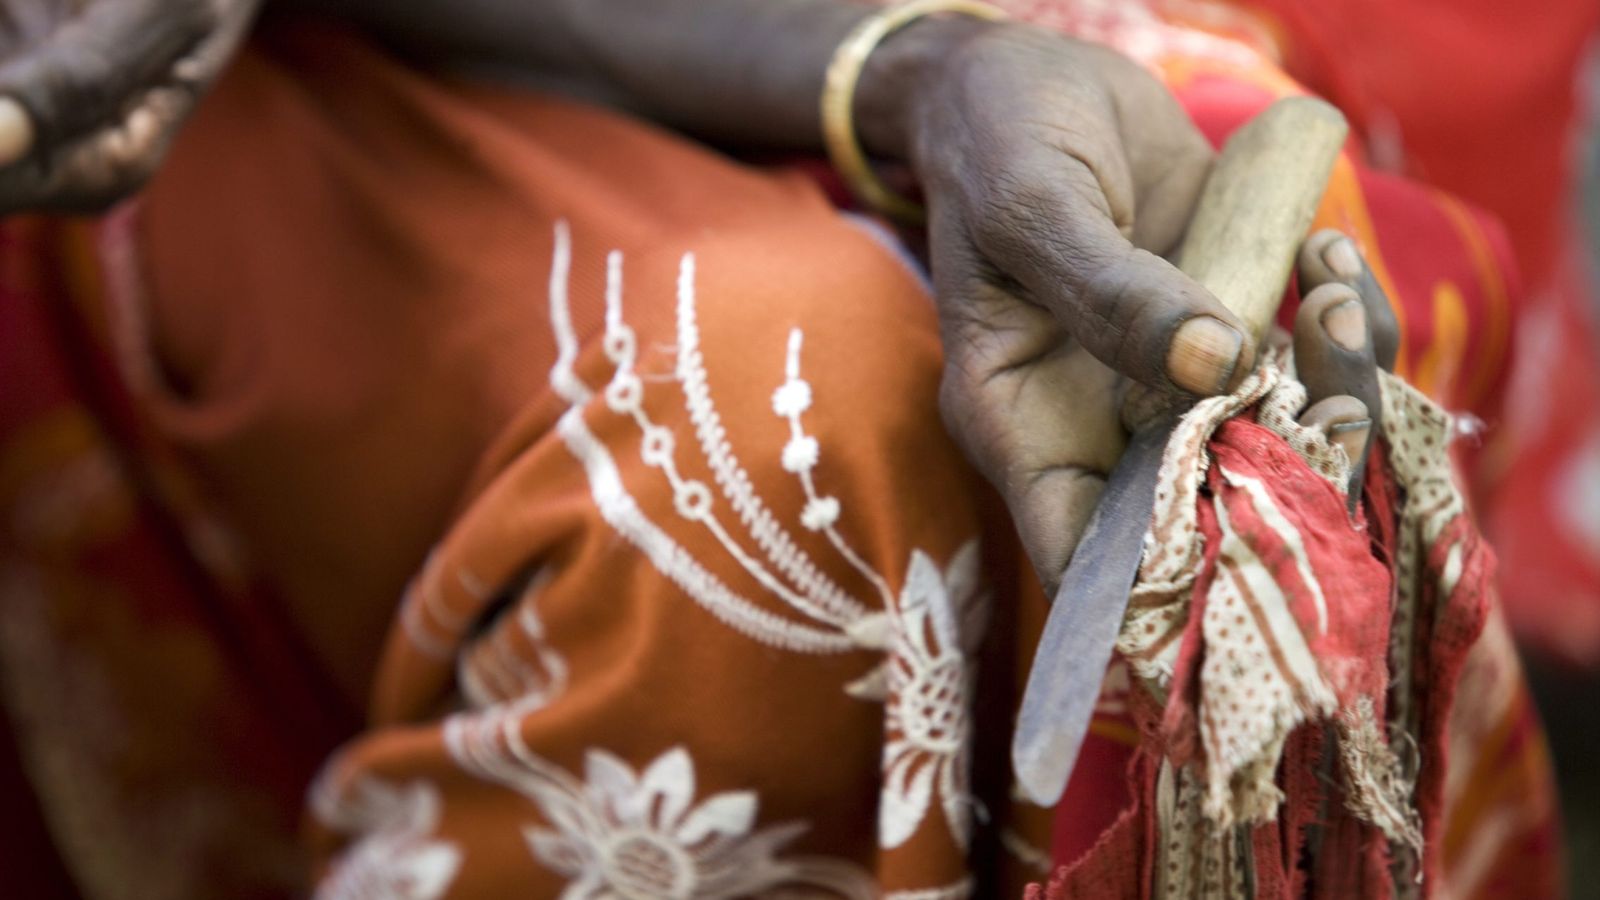 Foto: Una mujer que practicaba mutilaciones sostiene su herramienta en Deafar (Etiopía). (Foto: EFE/Unicef/Kate Holt)